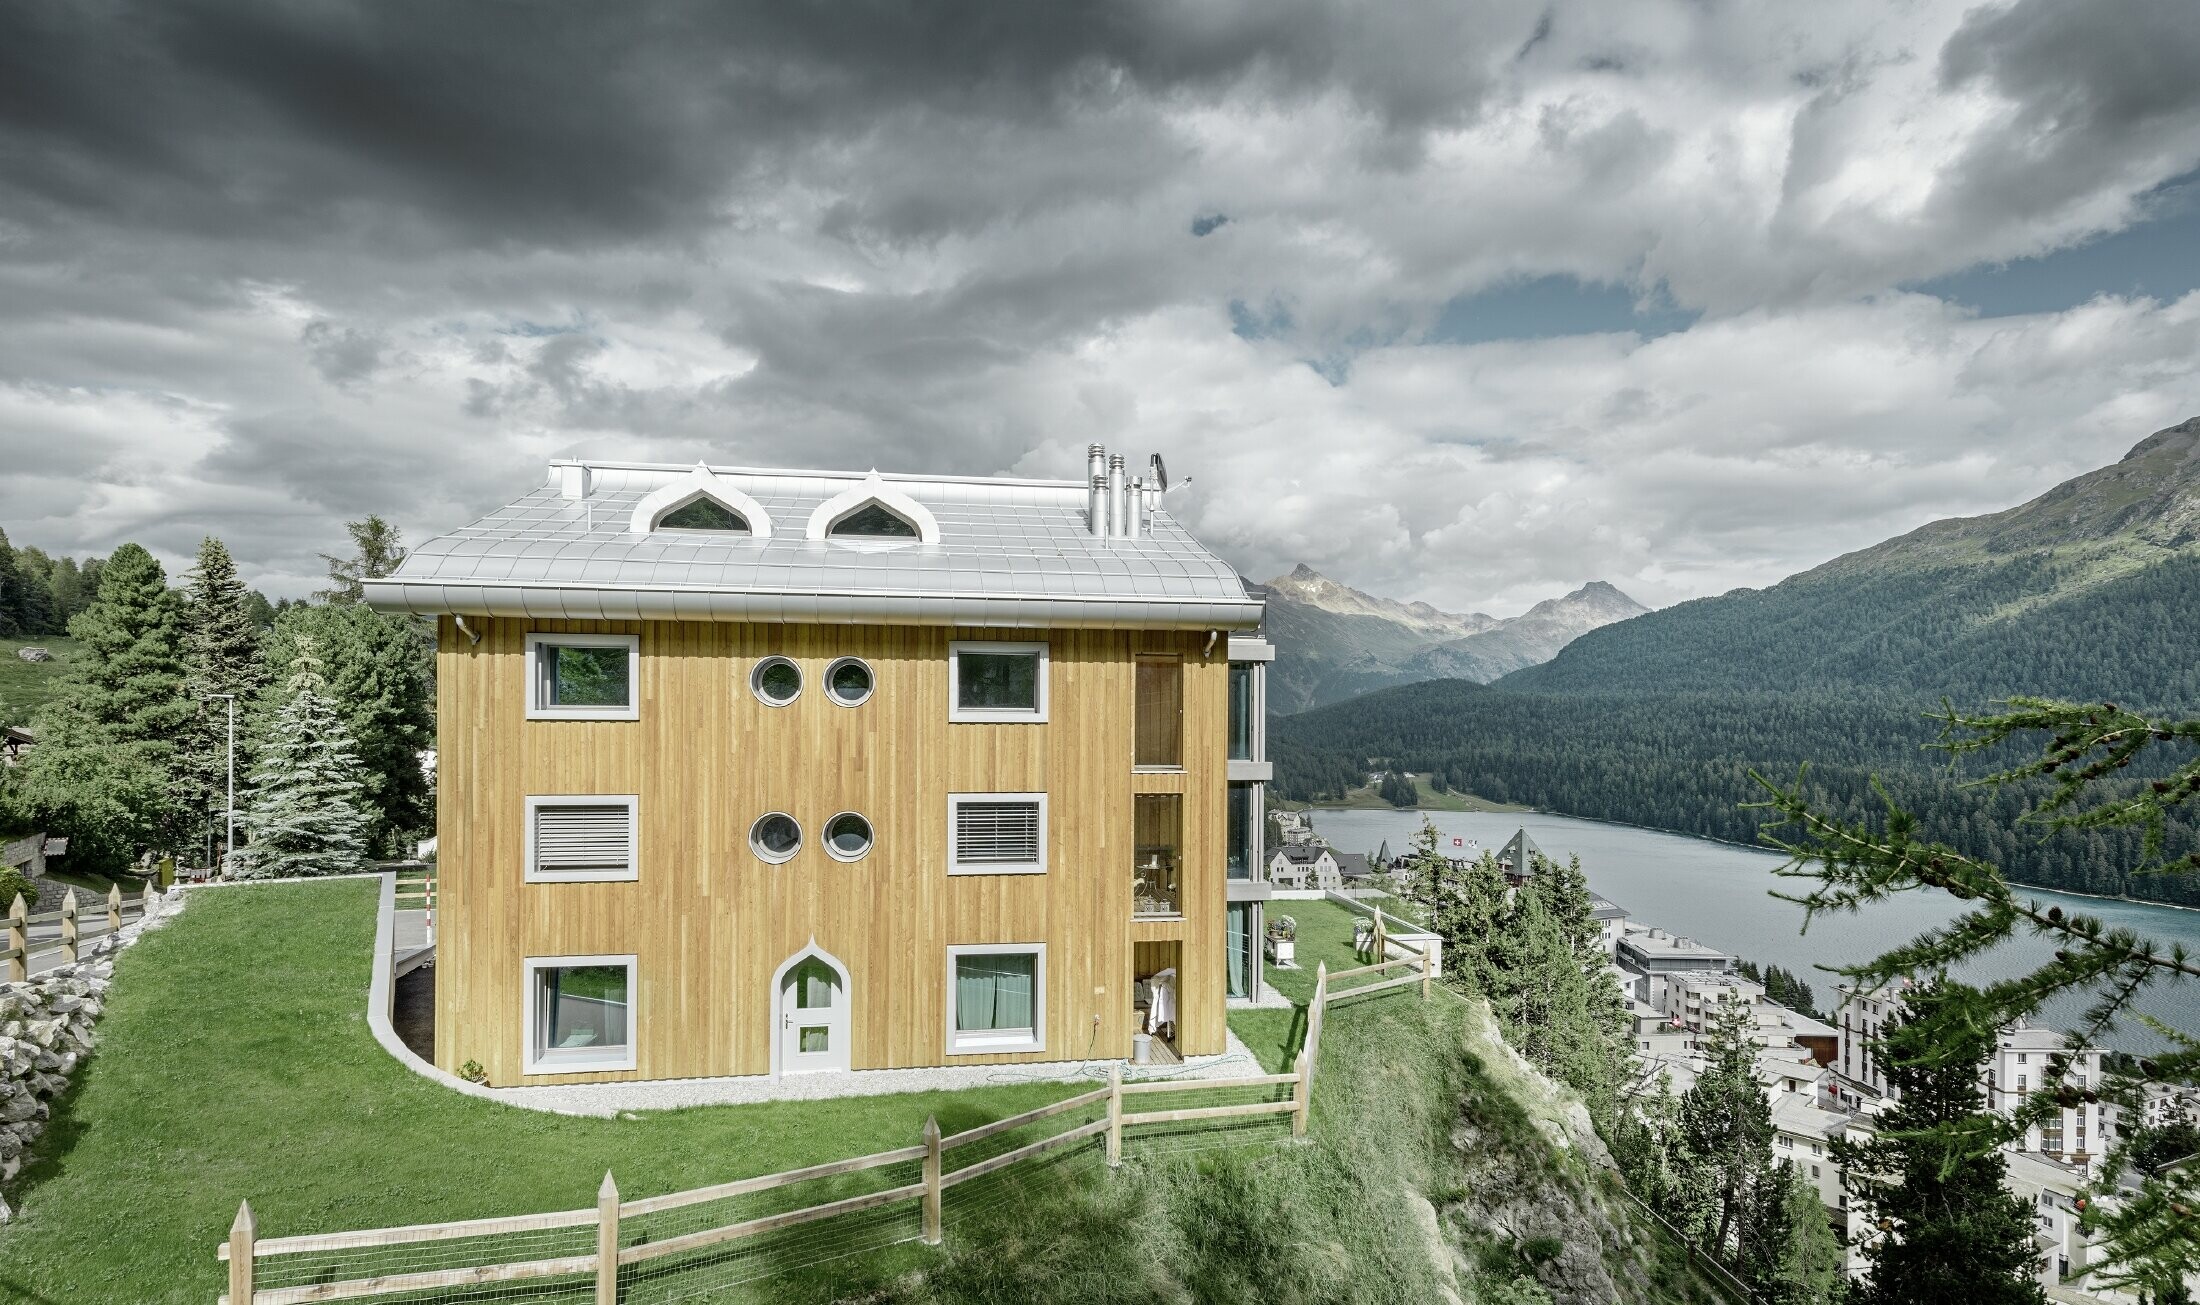 Bostadsbyggnad i St. Moritz med träfasad och aluminiumtak med svängda takskenor i silvermetallic